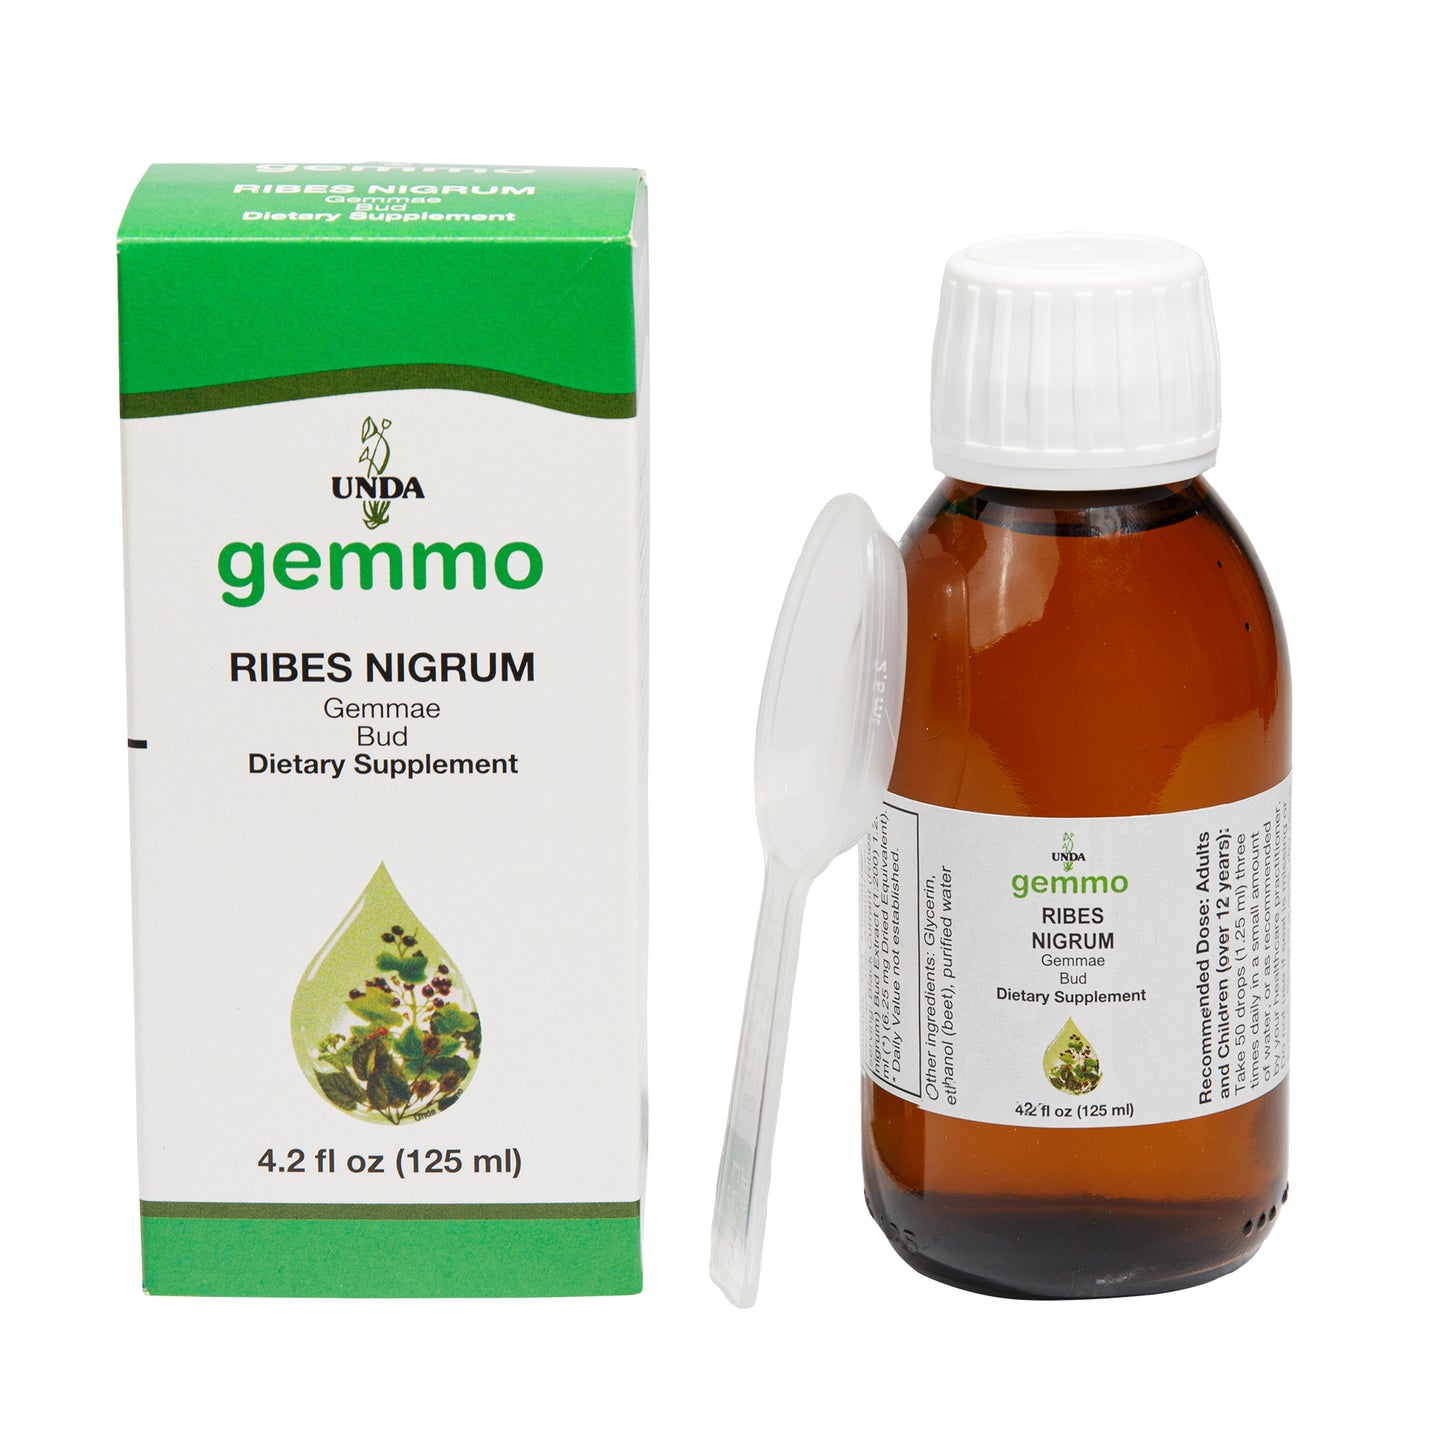 Gemmo Ribes Nigrum (Black Currant) Buds (4.5. fl oz) #10065387